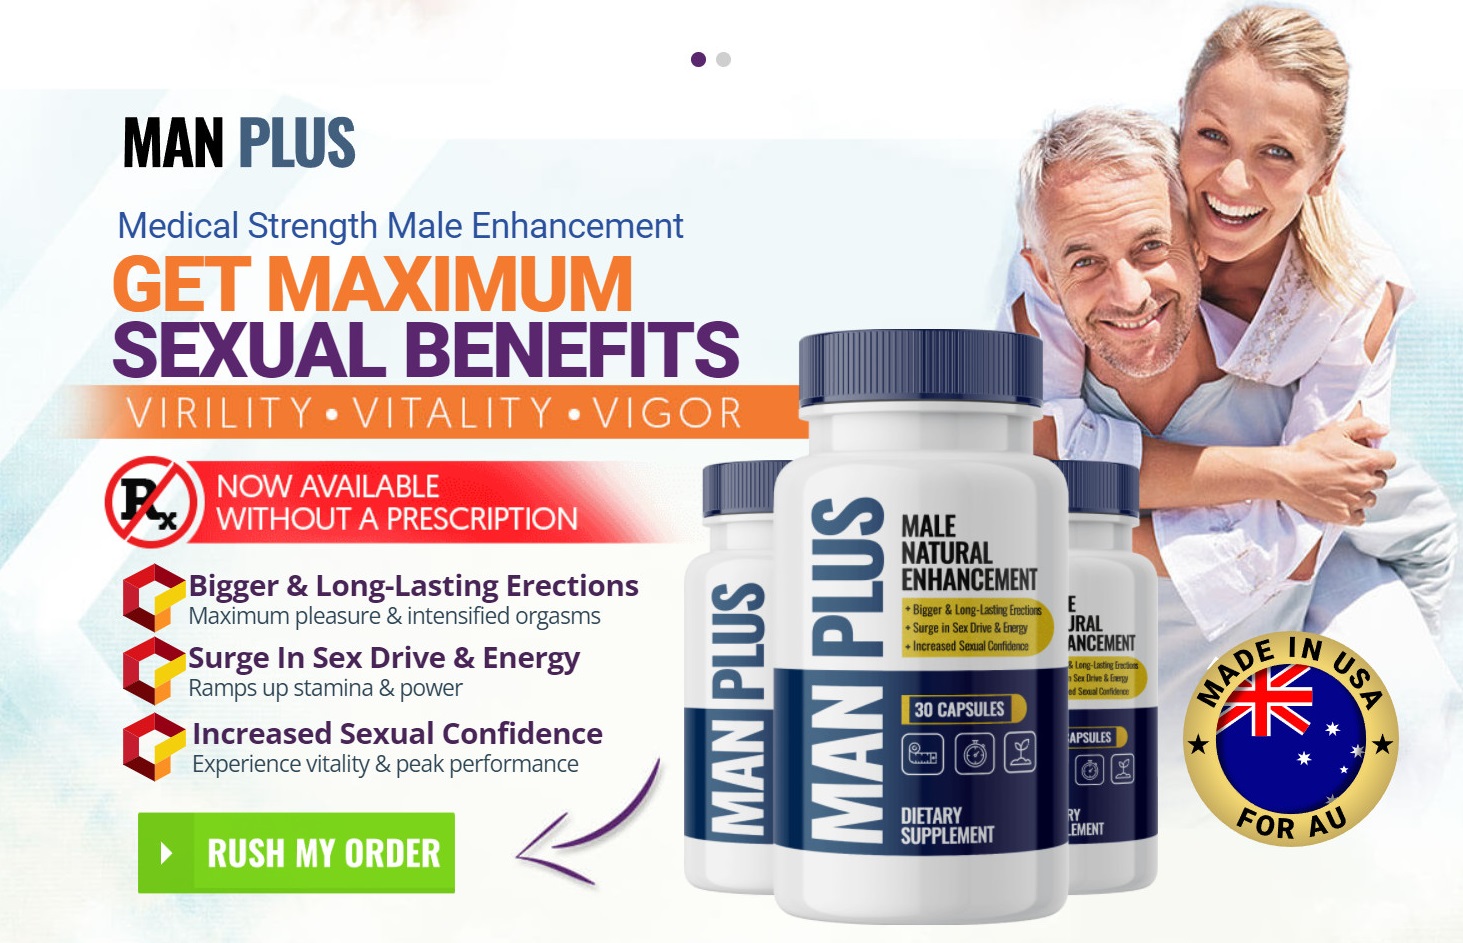 Manplus Male Enhancement Pills Australia & UK Reviews: How To Utilize It?